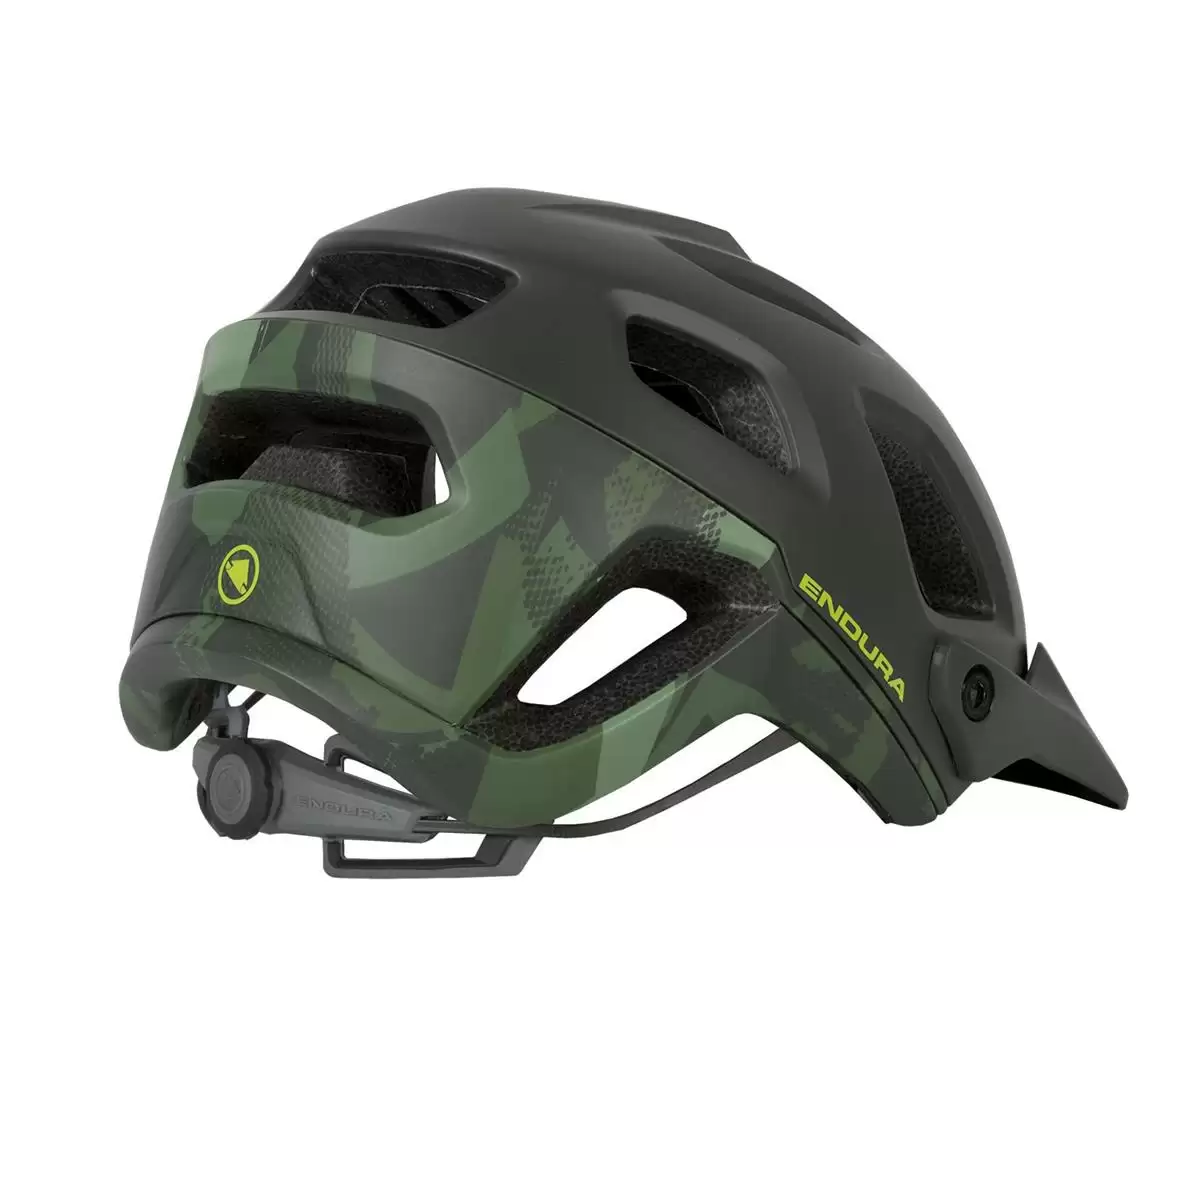 helmet SingleTrack Helmet II green size S/M (51-56cm) #1